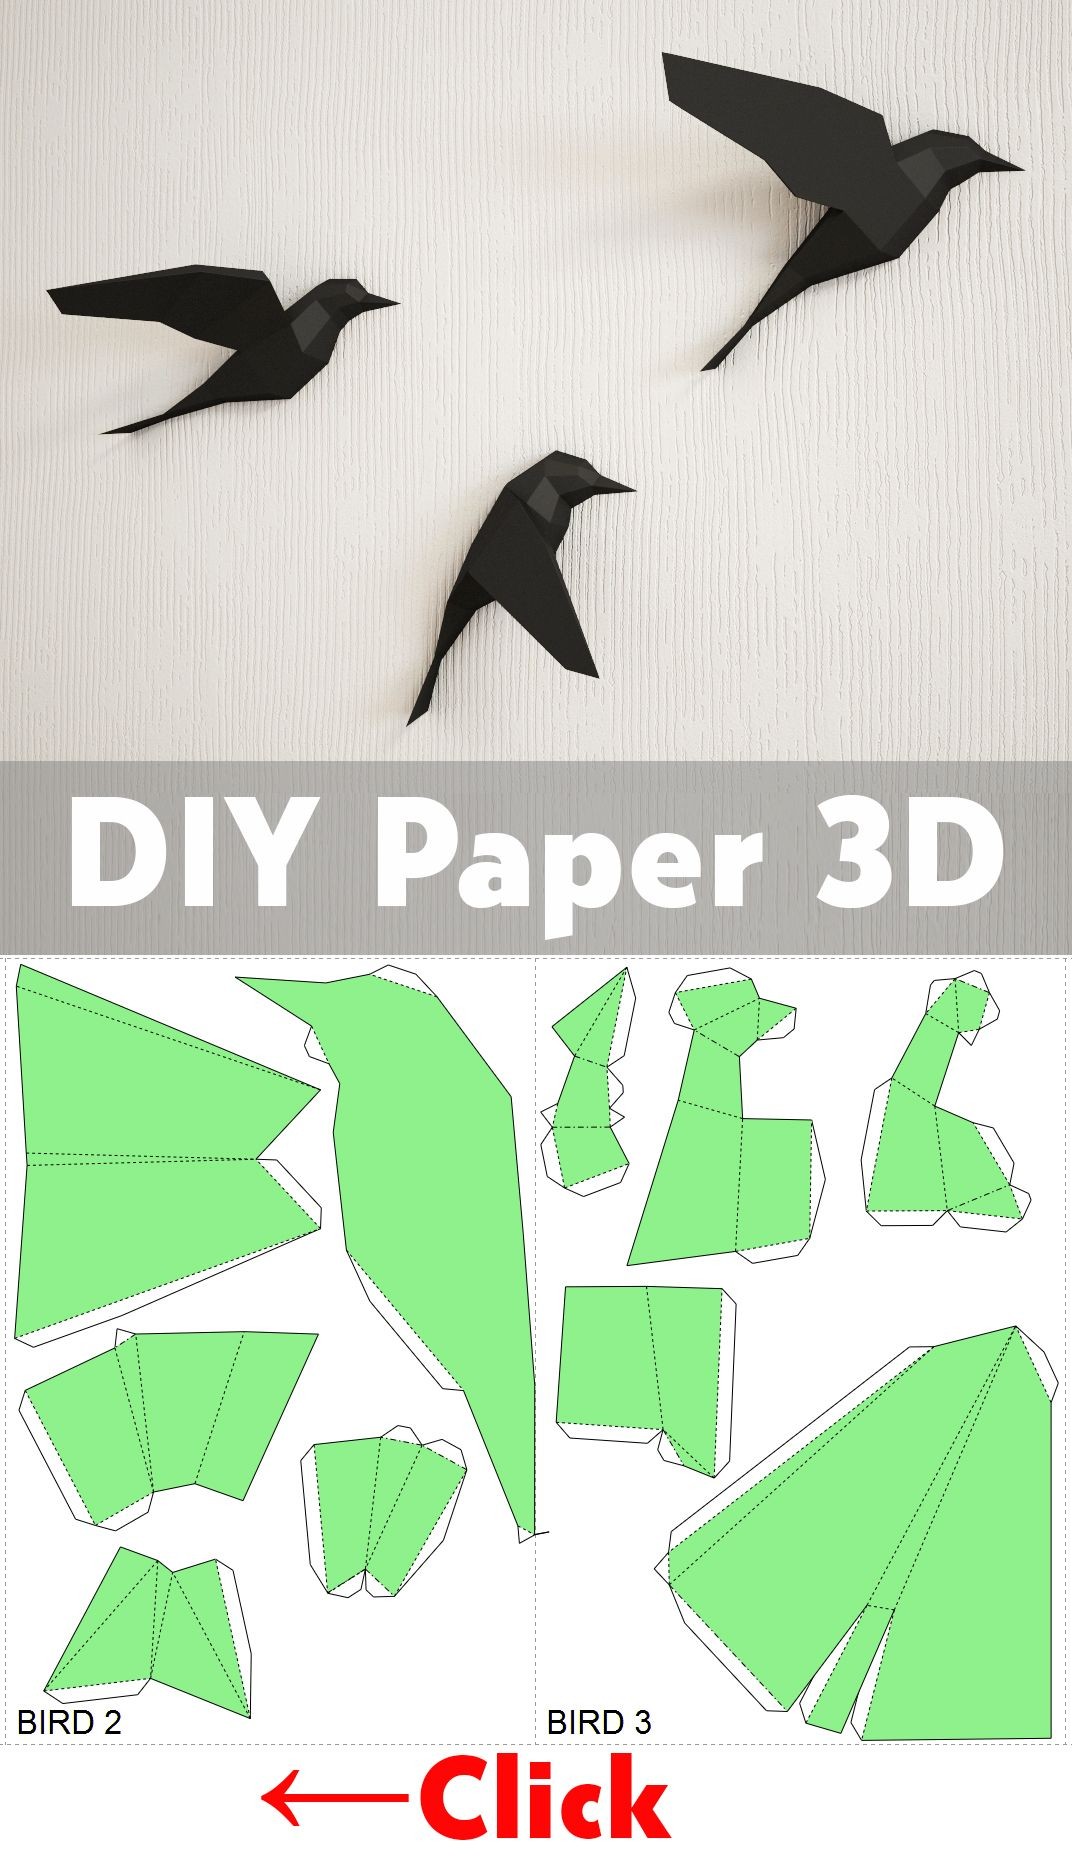 Papercraft Shark Diy Paper Birds On Wall 3d Papercraft Easy Paper Model Sculpture